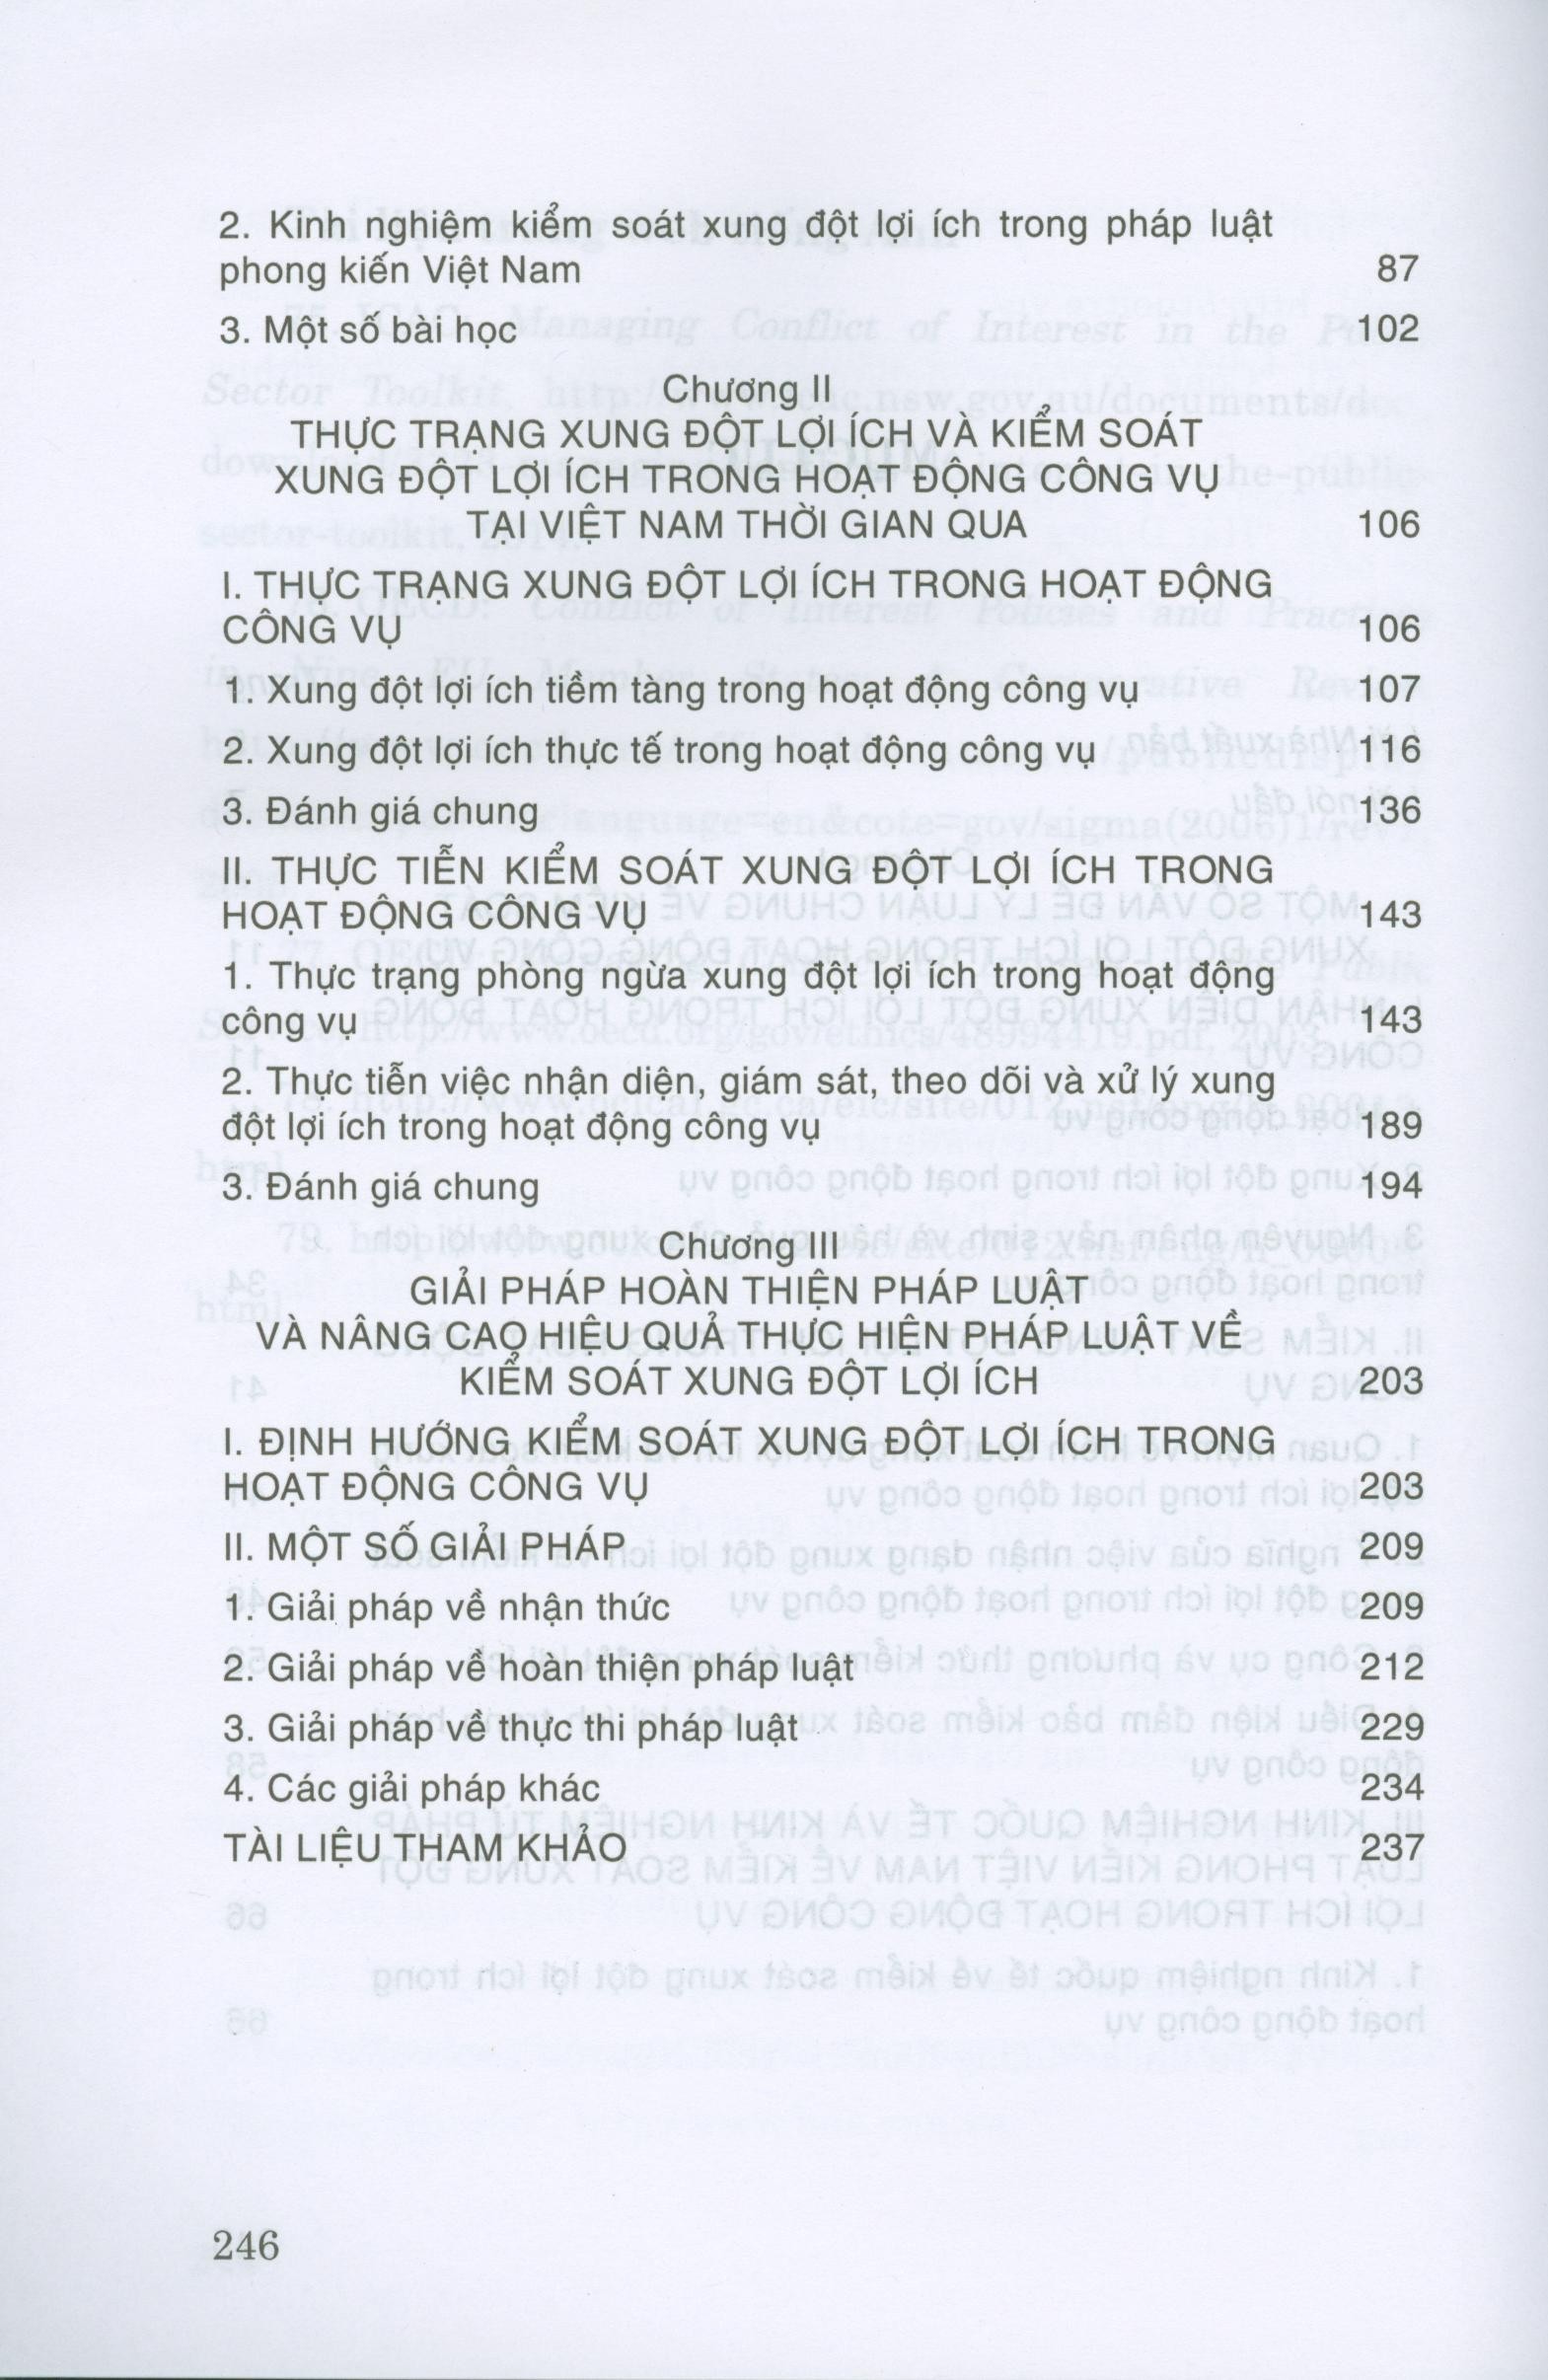 Kiểm Soát Xung Đột Lợi Ích Nhóm Trong Hoạt Động Công Vụ Nhằm Phòng Ngừa Tham Nhũng Ở Việt Nam Hiện Nay PDF